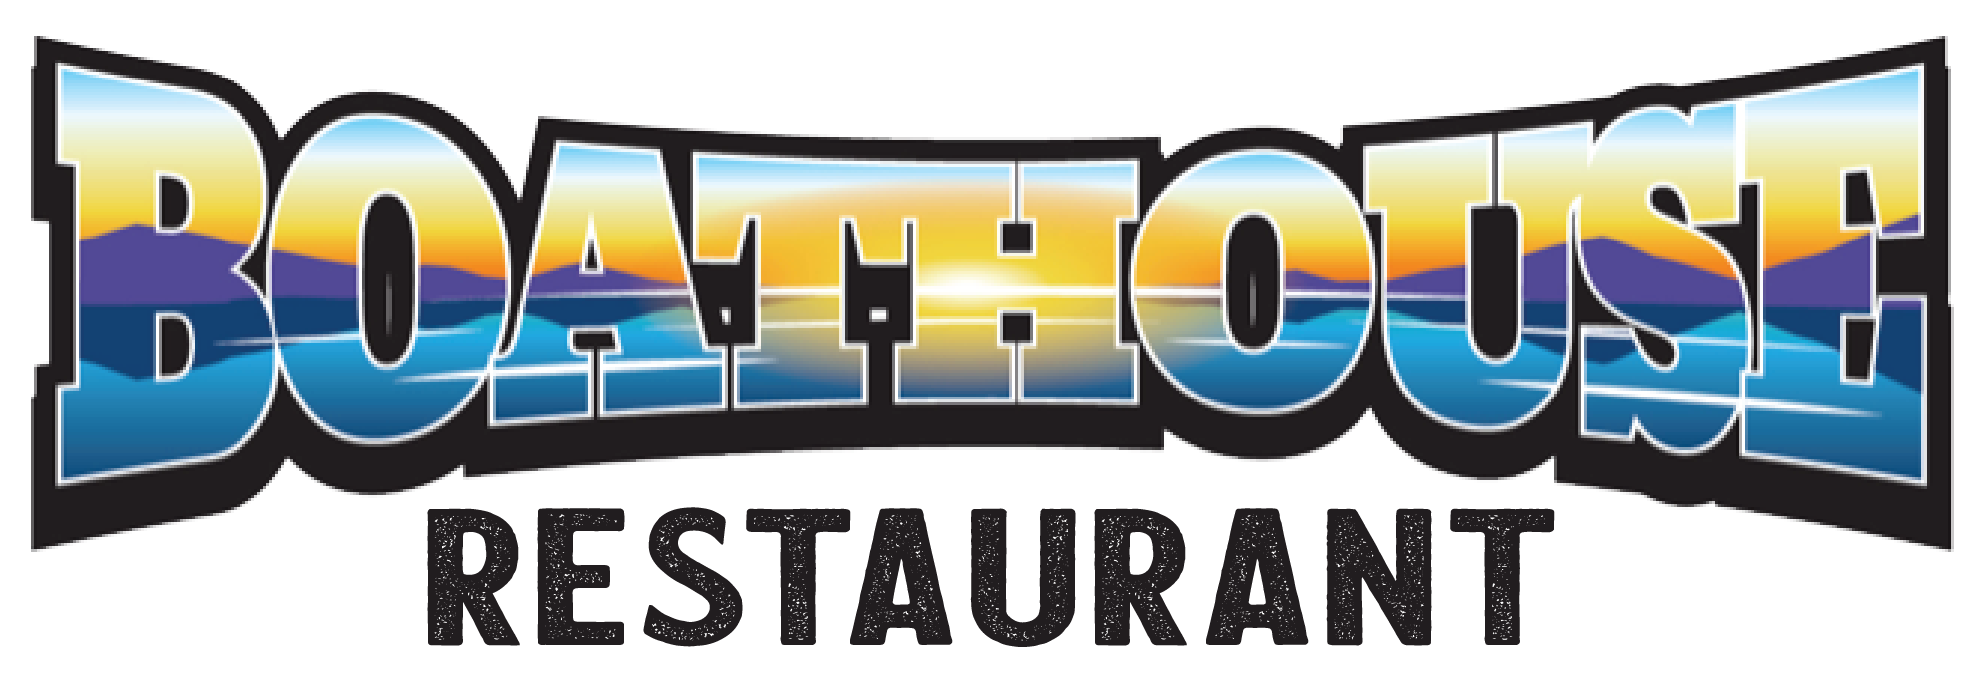 Boathouse Restaurant logo